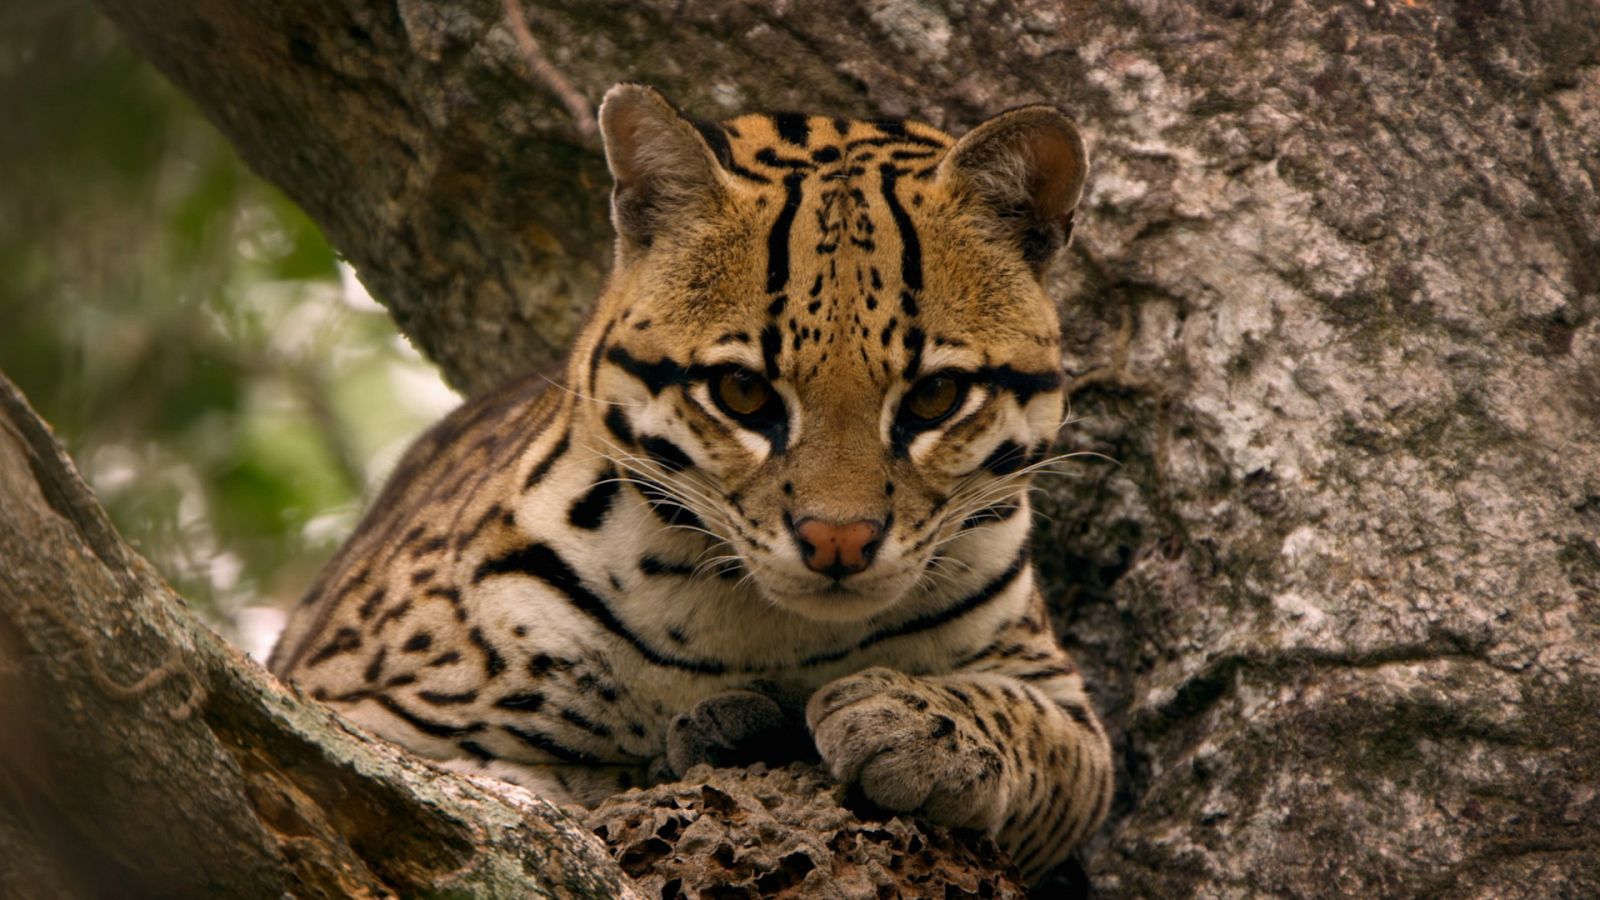 Animales al natural - T2. Episodio 9: Felinos salvajes - Documental en RTVE